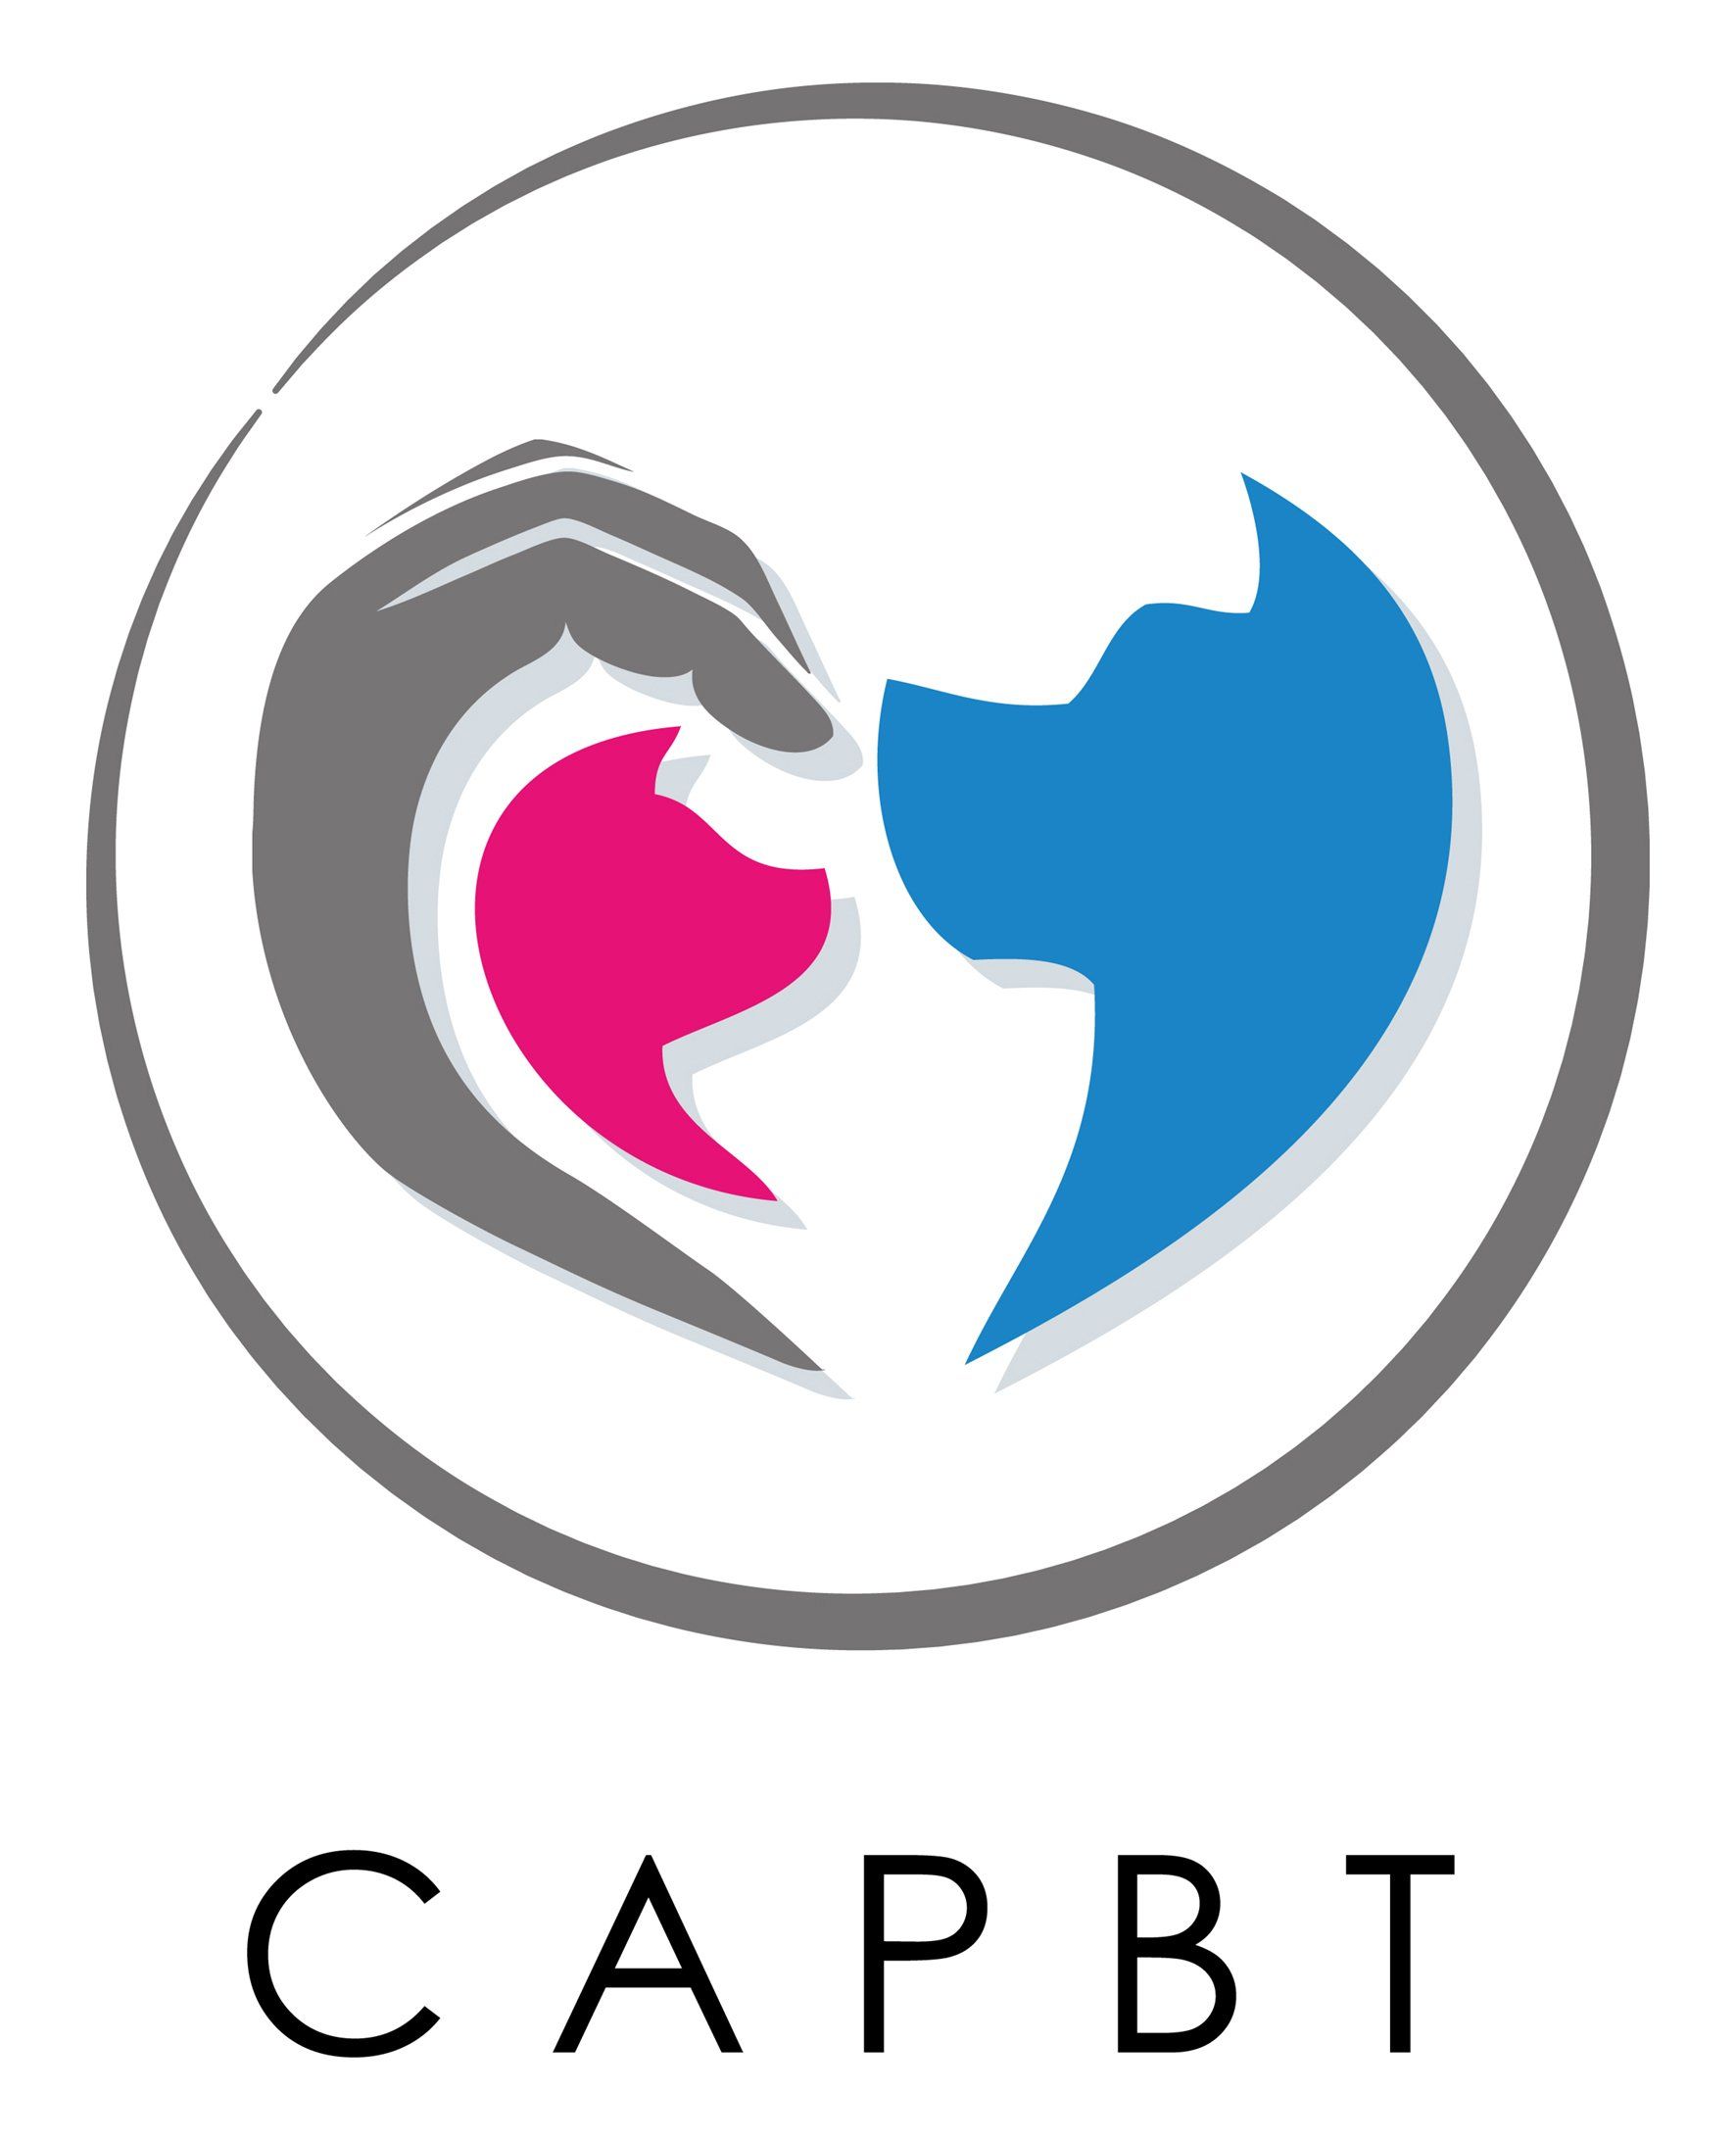 Capbt icon